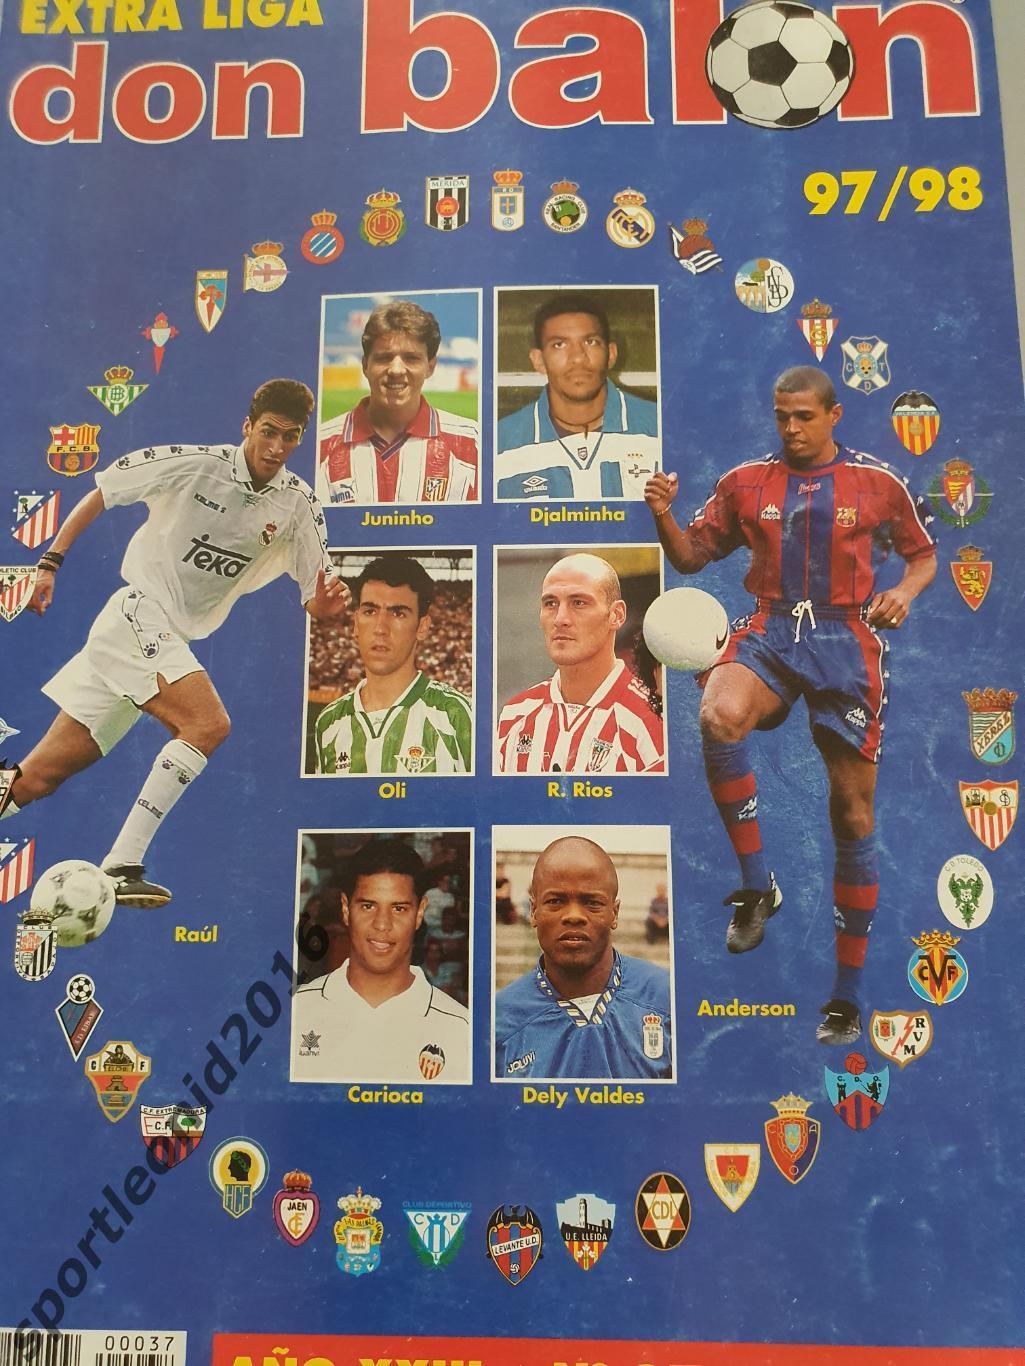 DON BALON EXTRA La Liga-97/98 Представление всех клубов . Постеры. 1